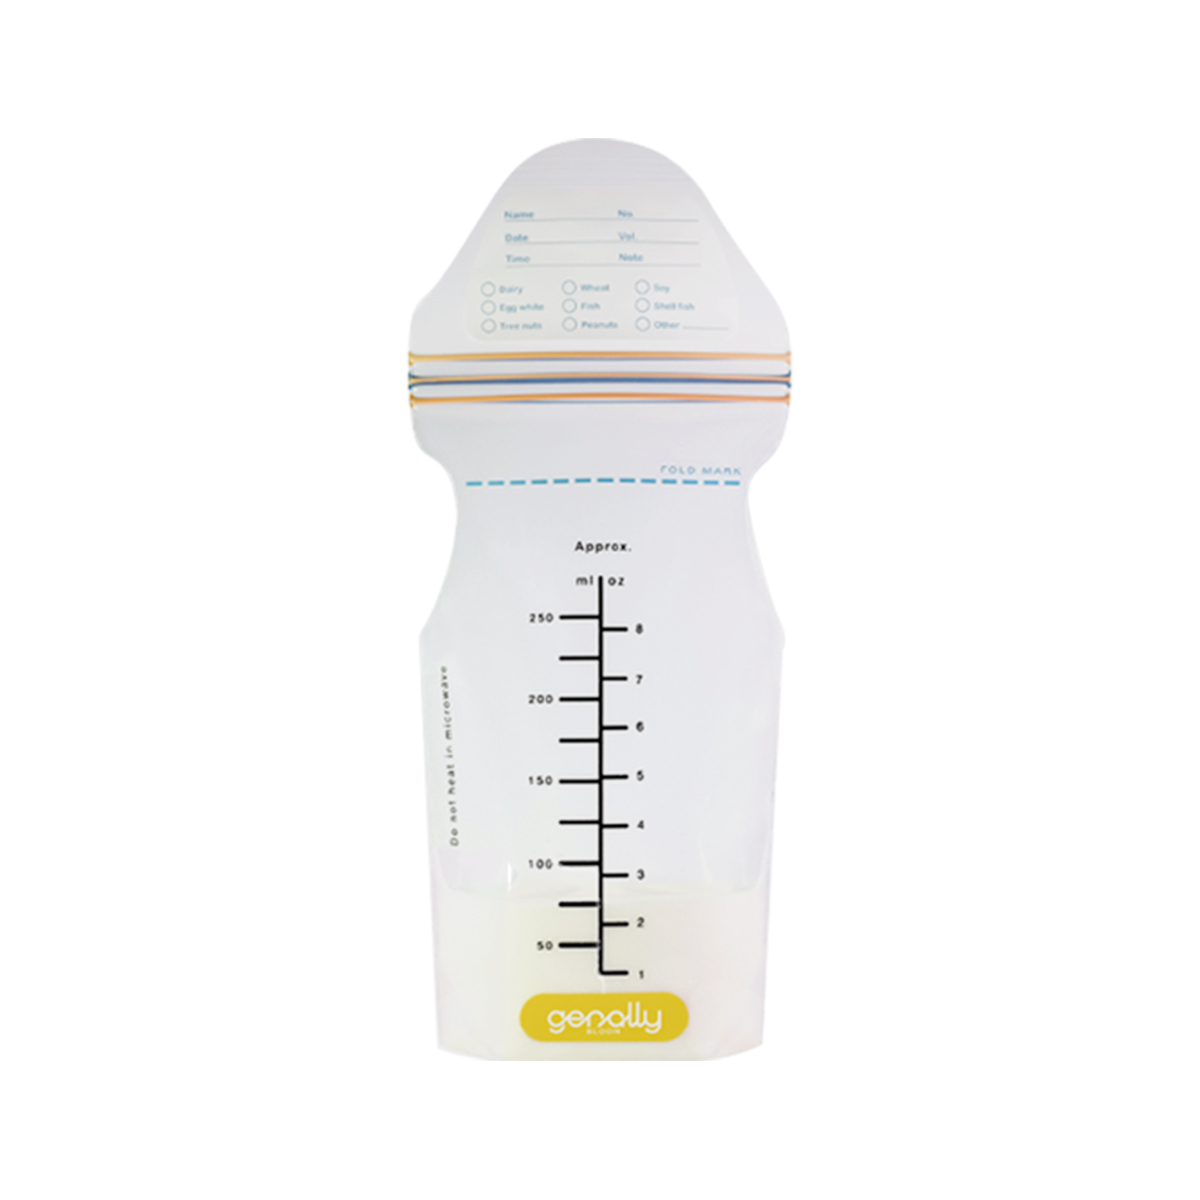 NMT Breast Milk Pouch - ถุงเก็บน้ำนม NMT ขนาด 8 ออนซ์ (1 กล่องบรรจุ 30 ถุง)